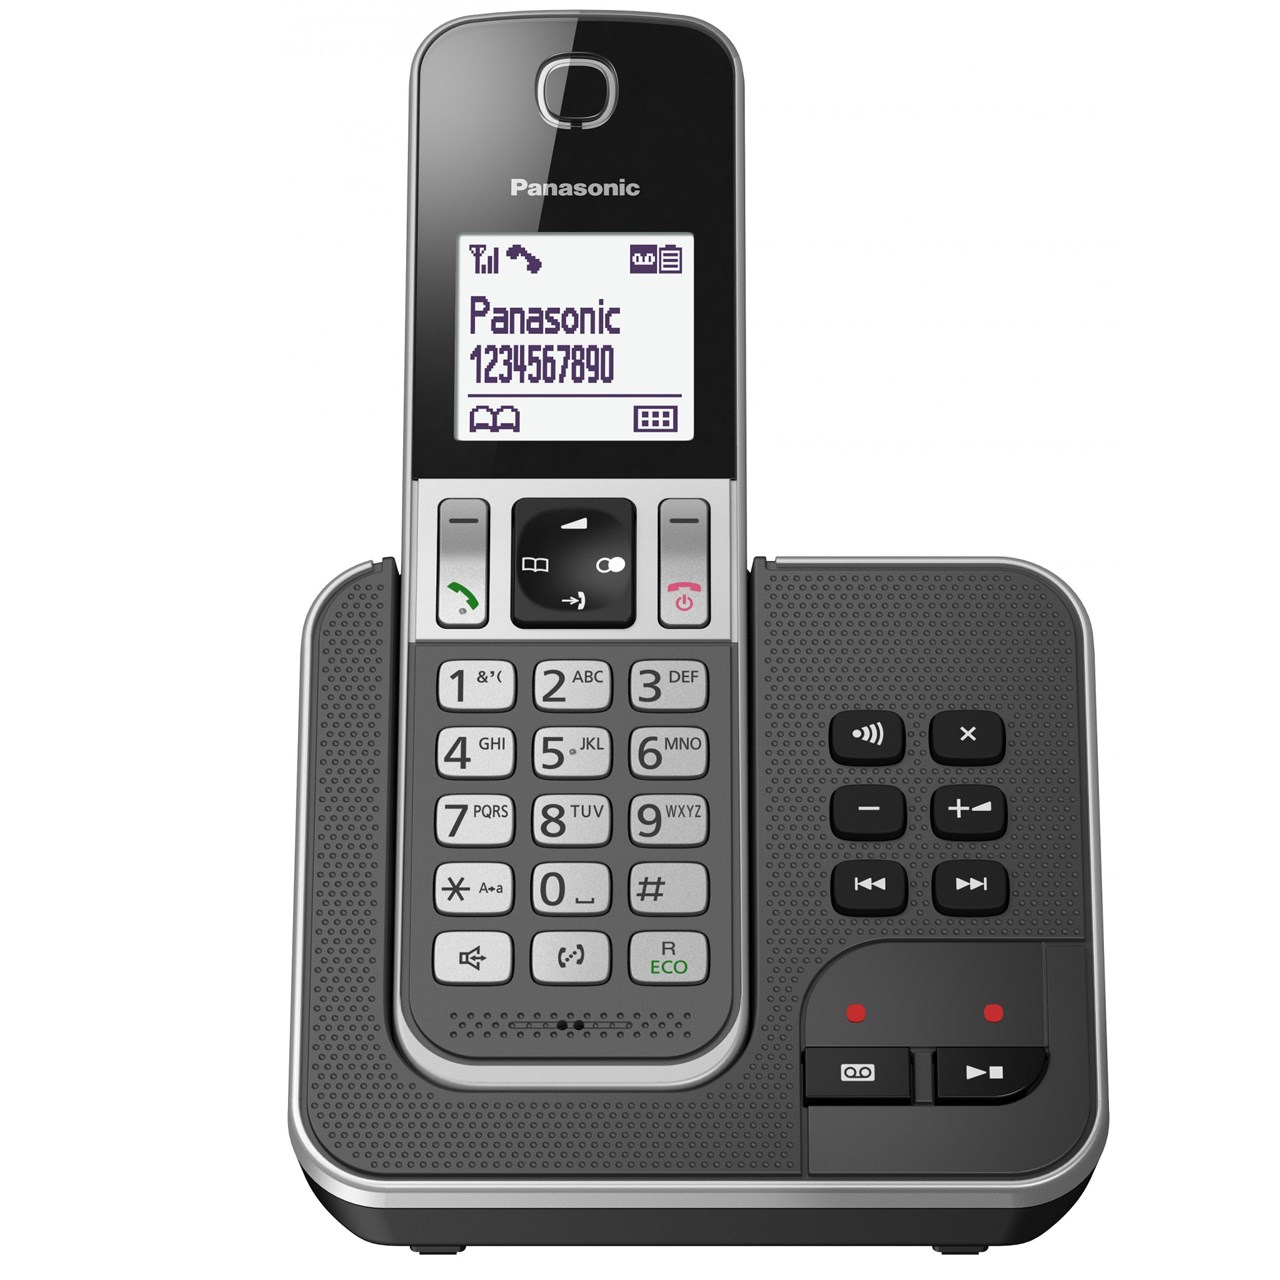 نکته خرید - قیمت روز تلفن بی سیم پاناسونیک مدل KX-TGD320 خرید